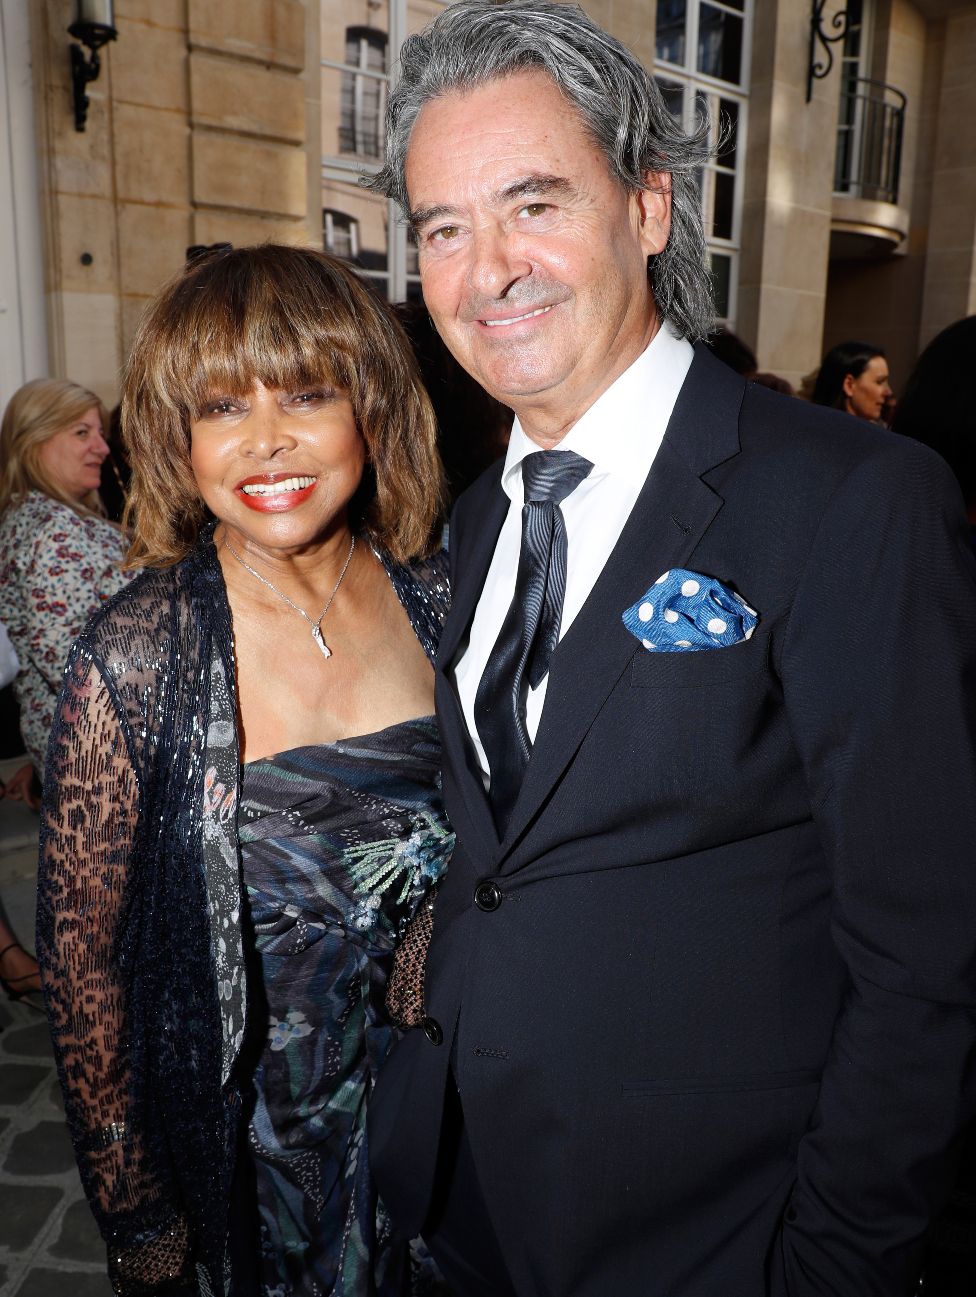 Tina Turner Me bashkëshortin e saj Erwin Bach në 2018